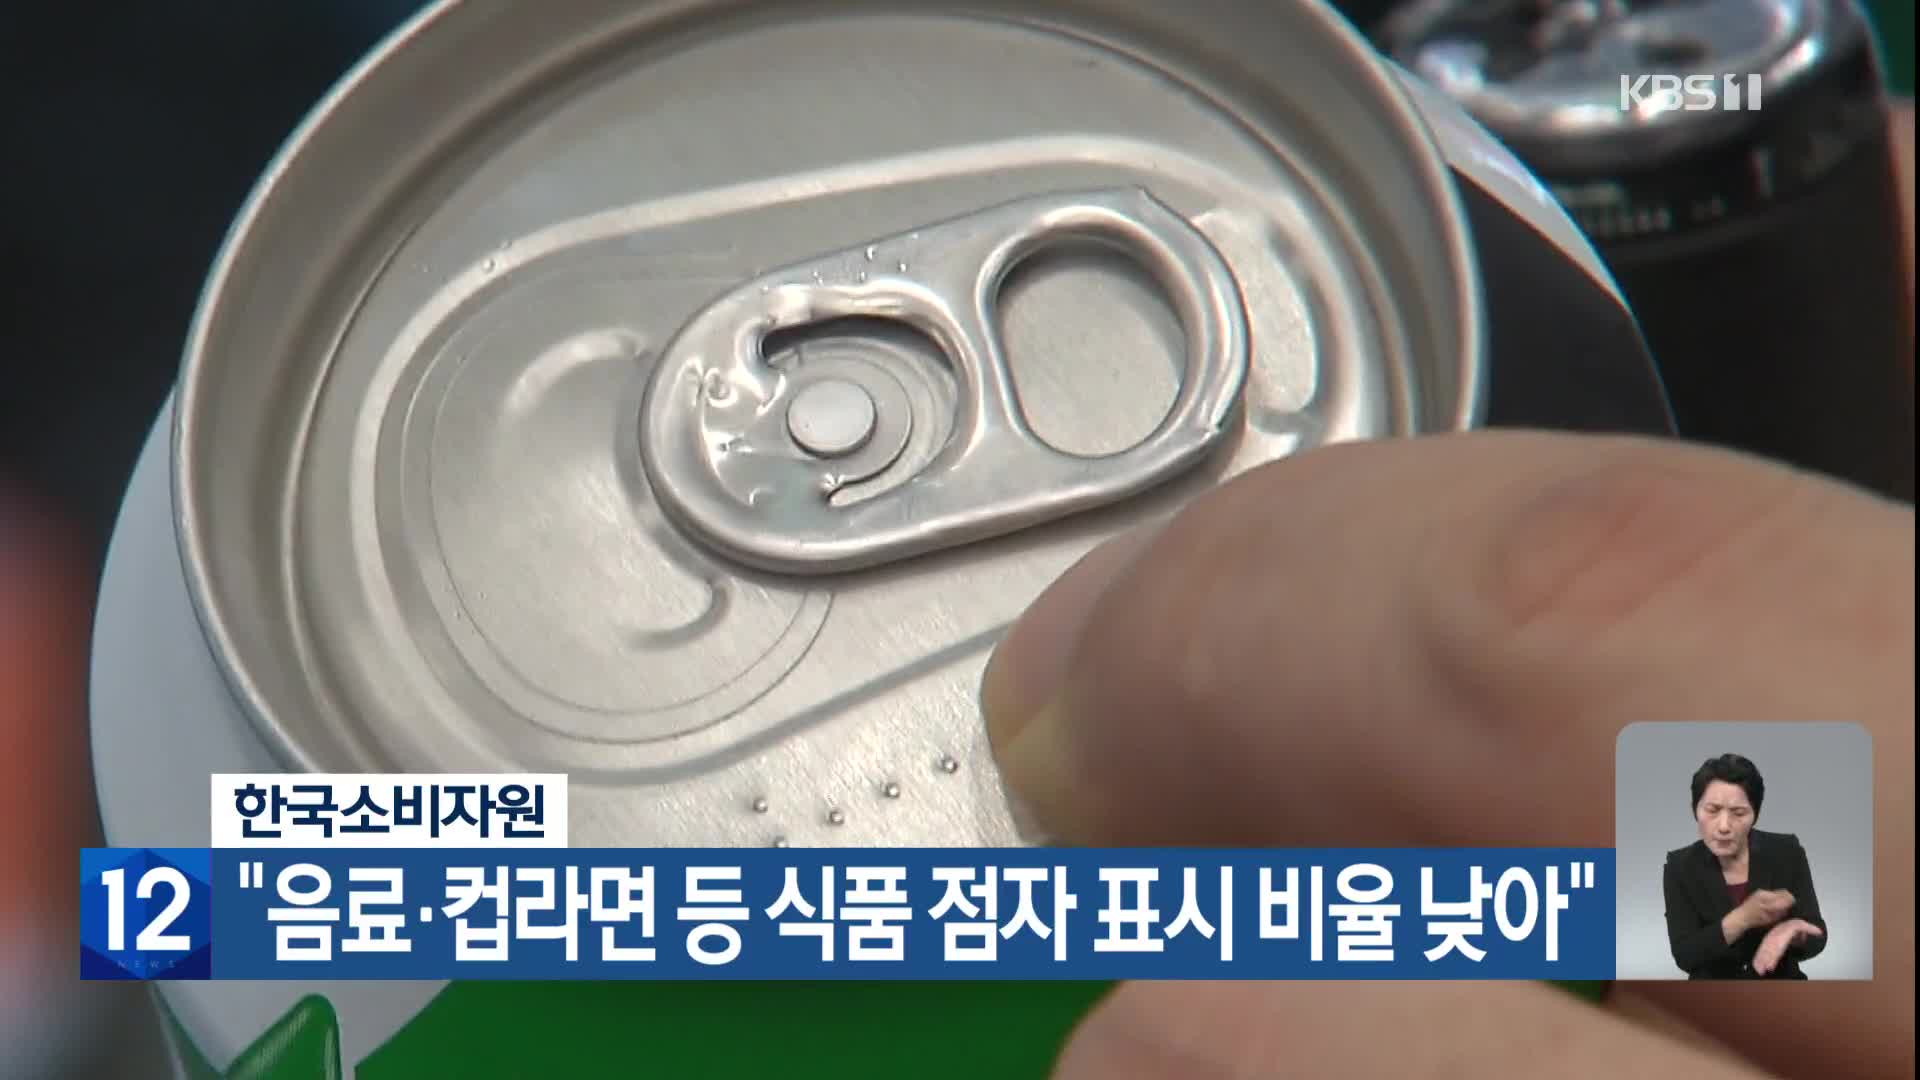 한국소비자원 “음료·컵라면 등 식품 점자 표시 비율 낮아”